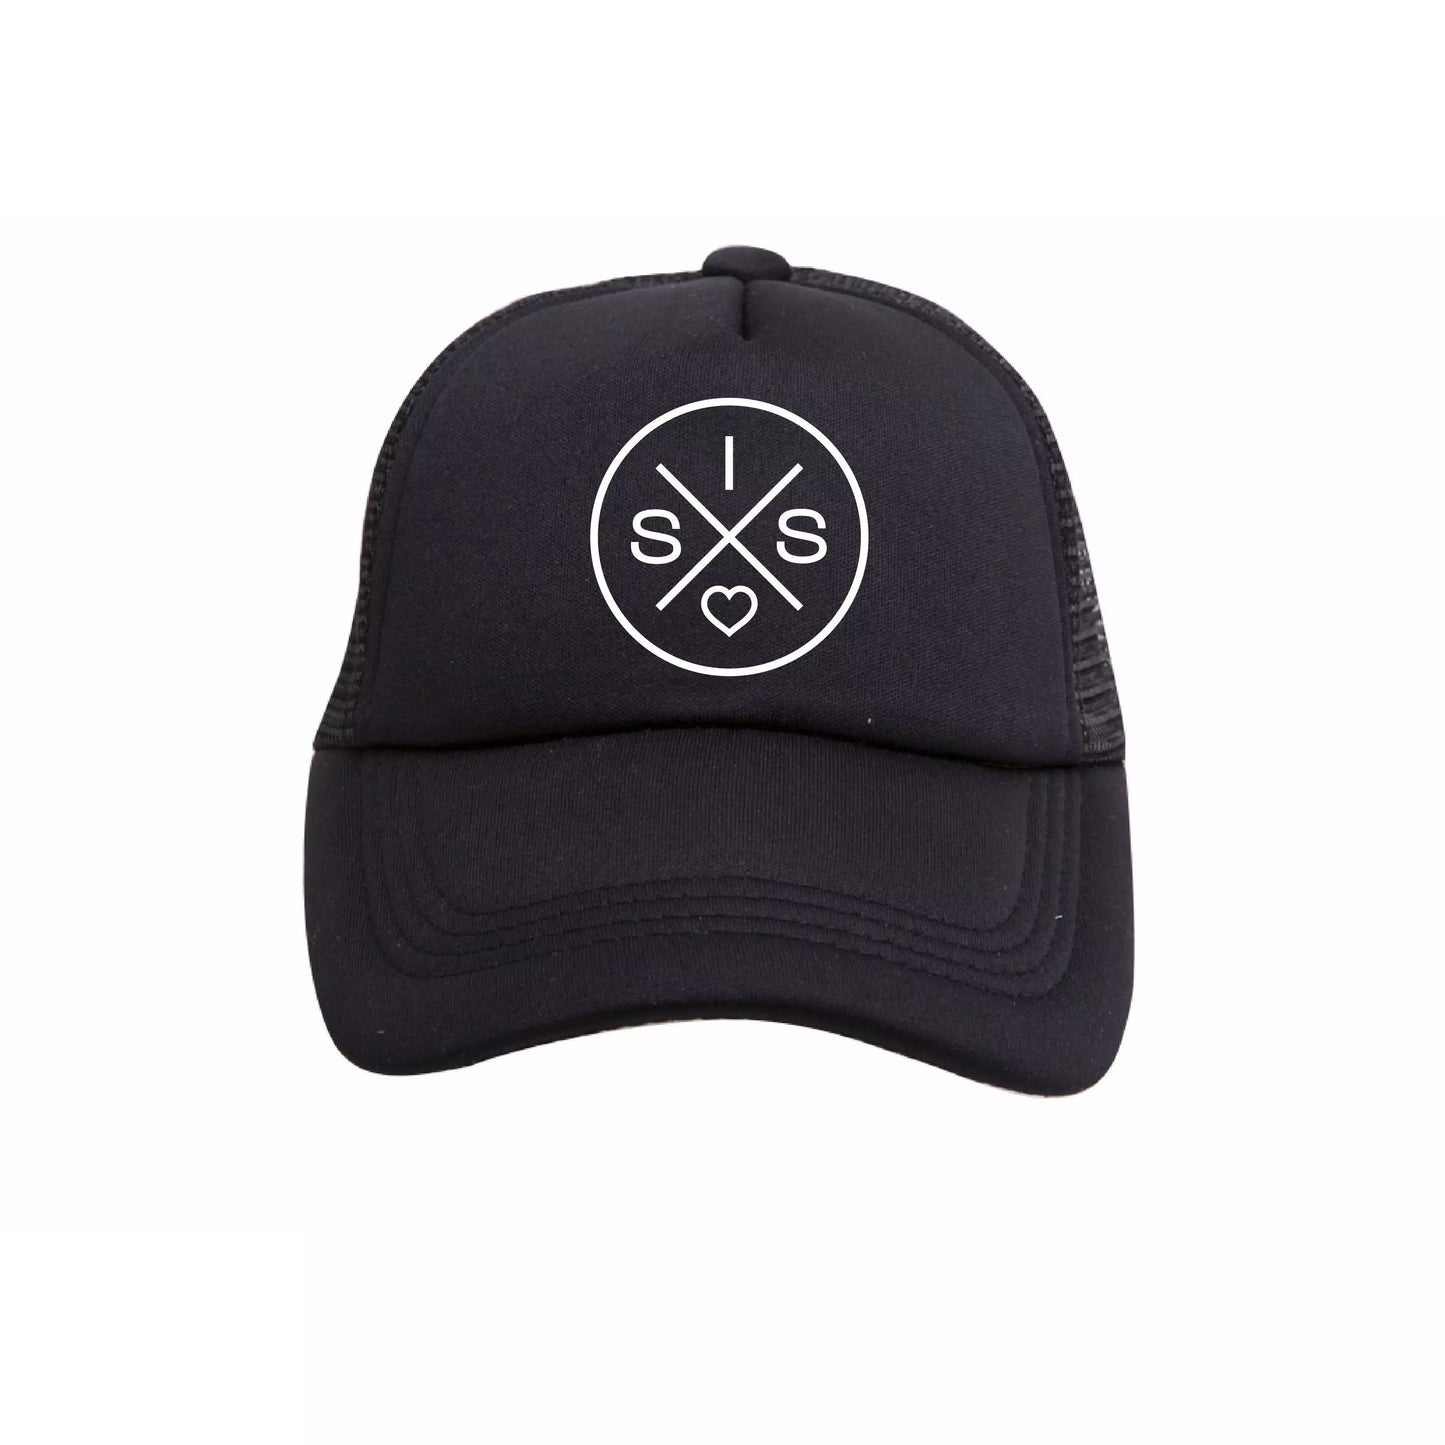 SIS X Trucker Hat